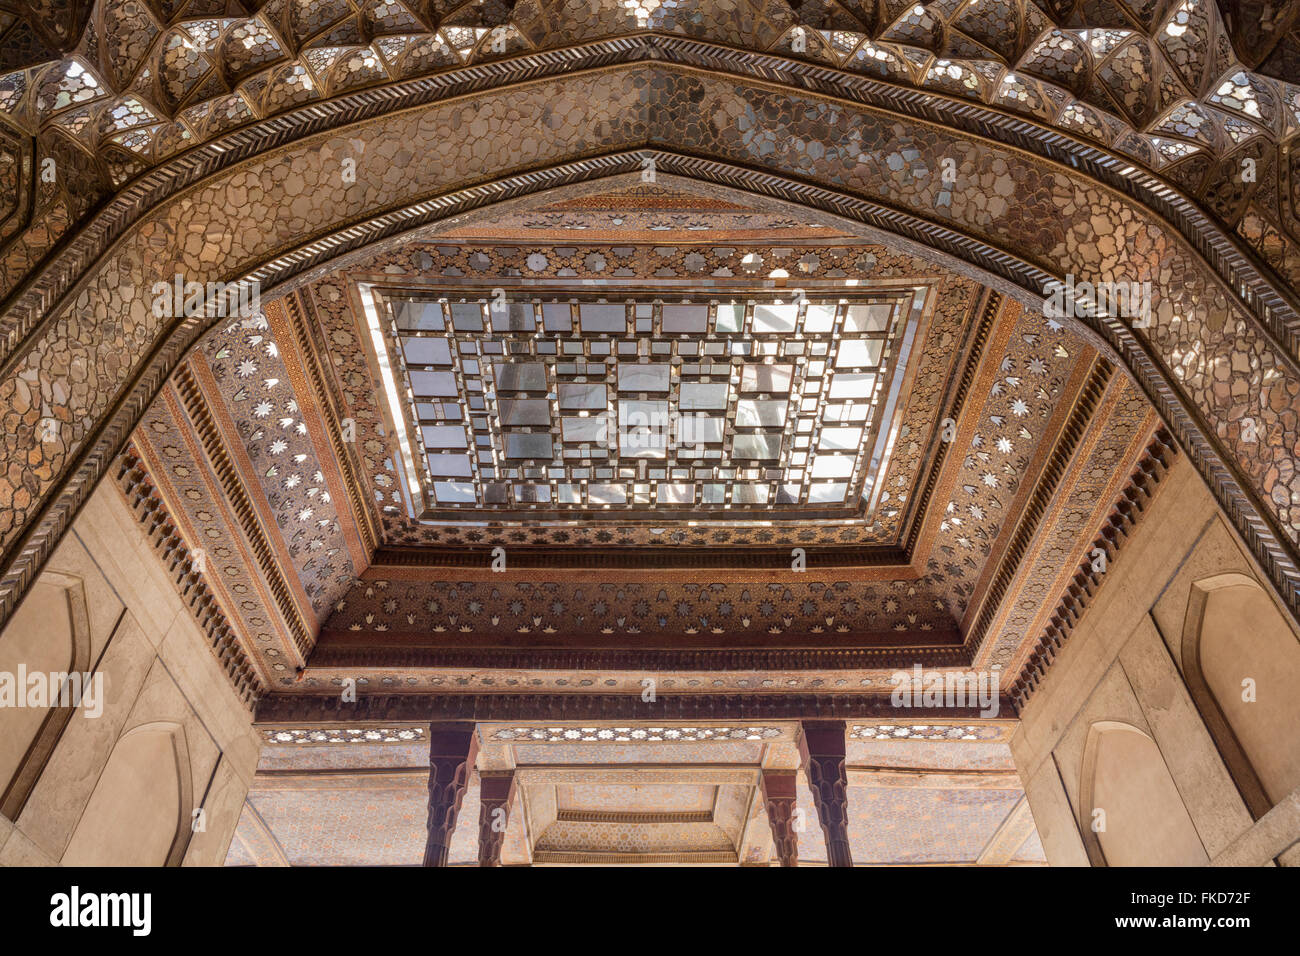 Détail de toit de talar safavide et le travail à la 17e siècle Chehel Sotun pavilion, Isfahan, Iran Banque D'Images